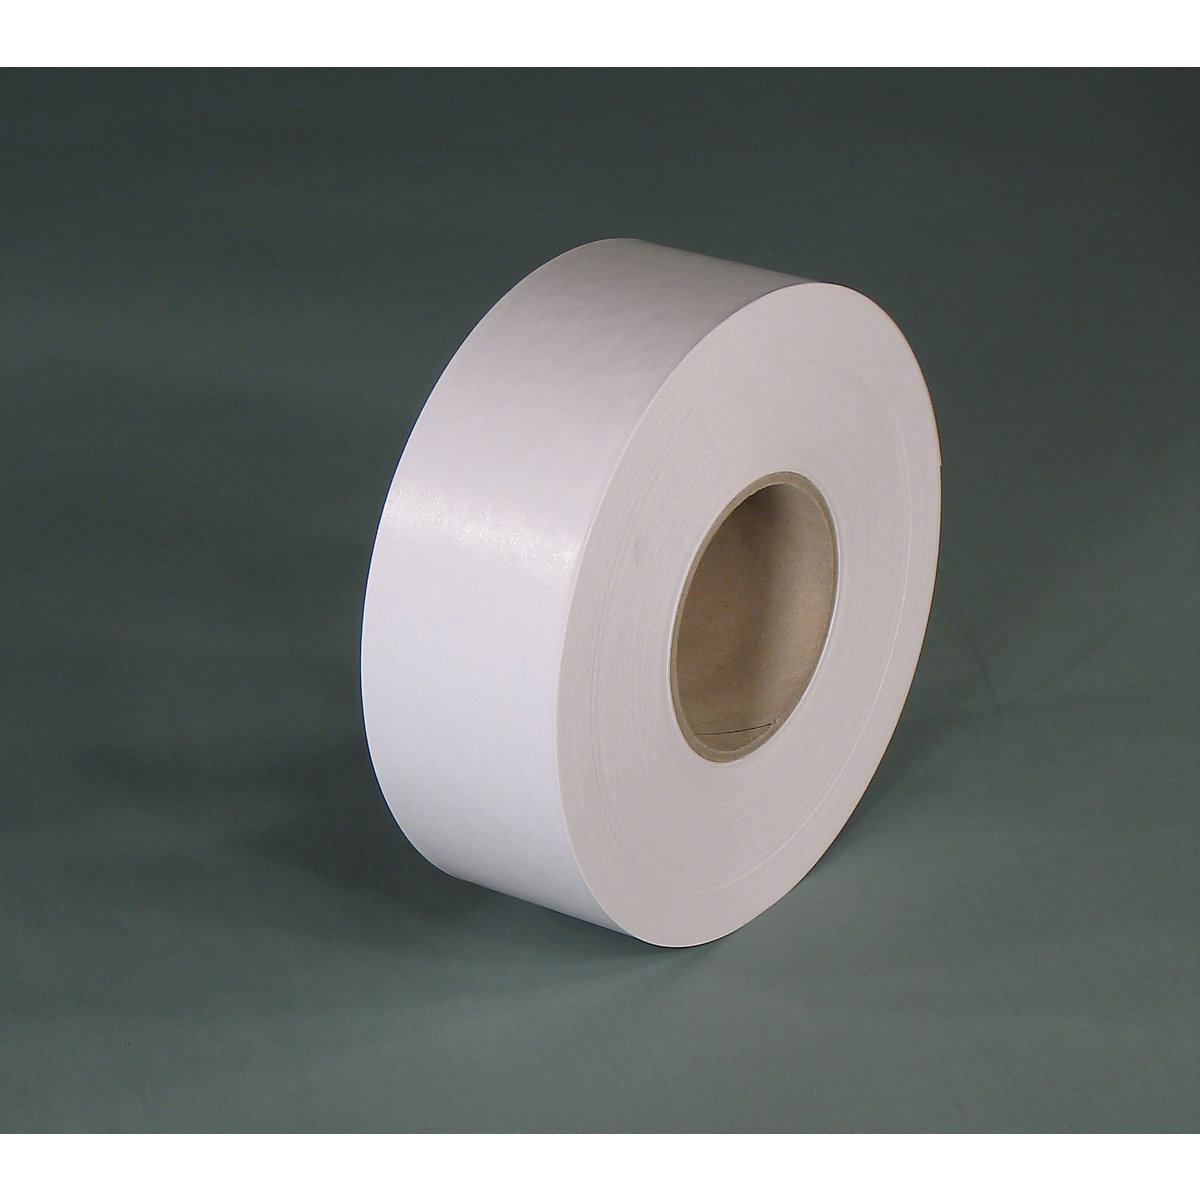 Gummed tape – eurokraft basic, basic model, pack of 12 rolls, white, tape width 60 mm-1